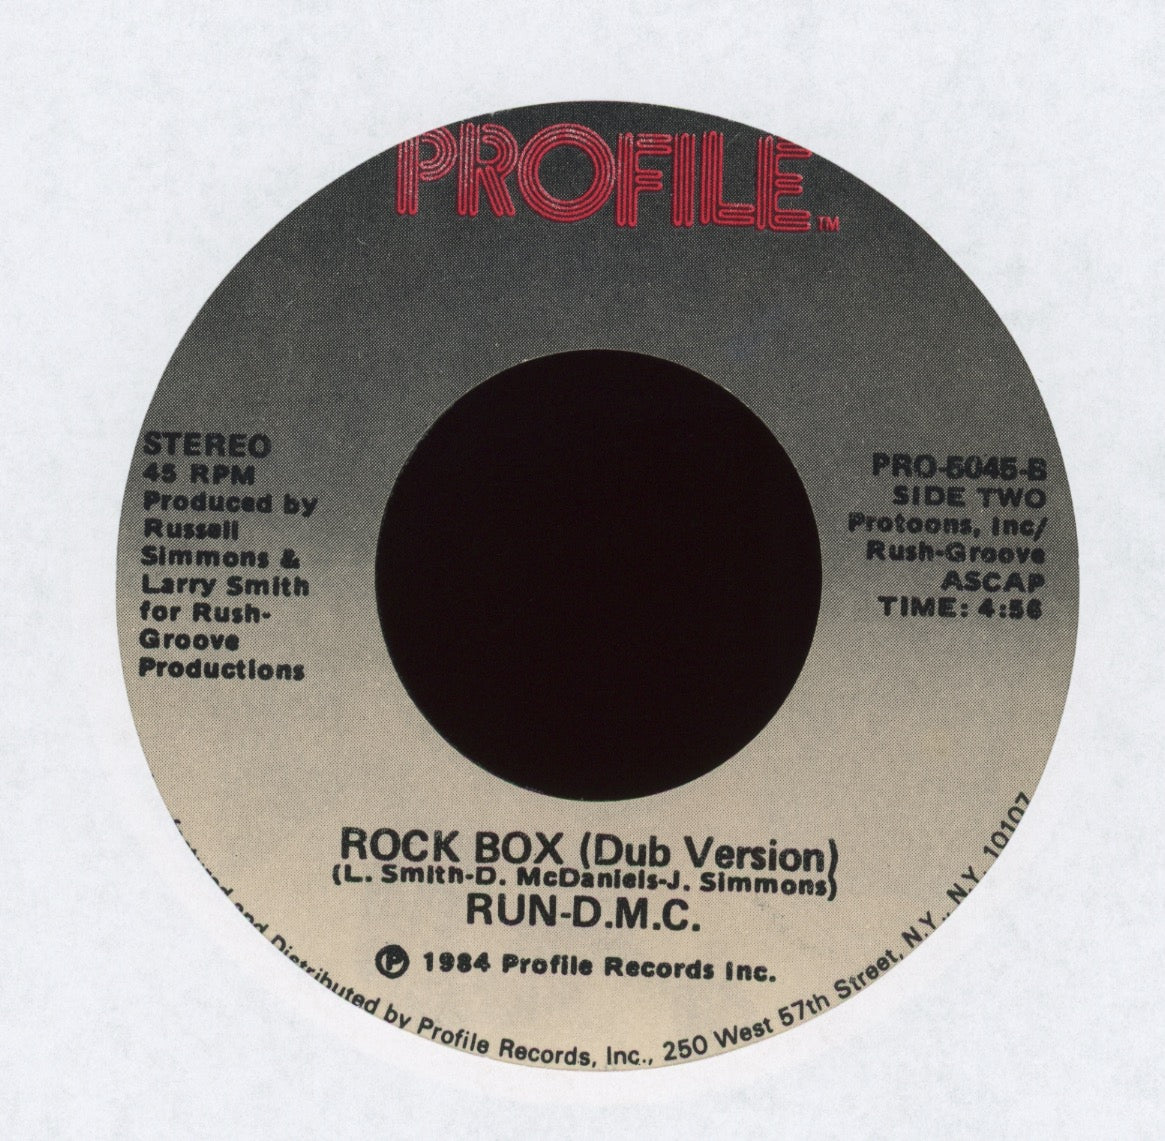 ROCK BOX RECORDS – The Rock Box